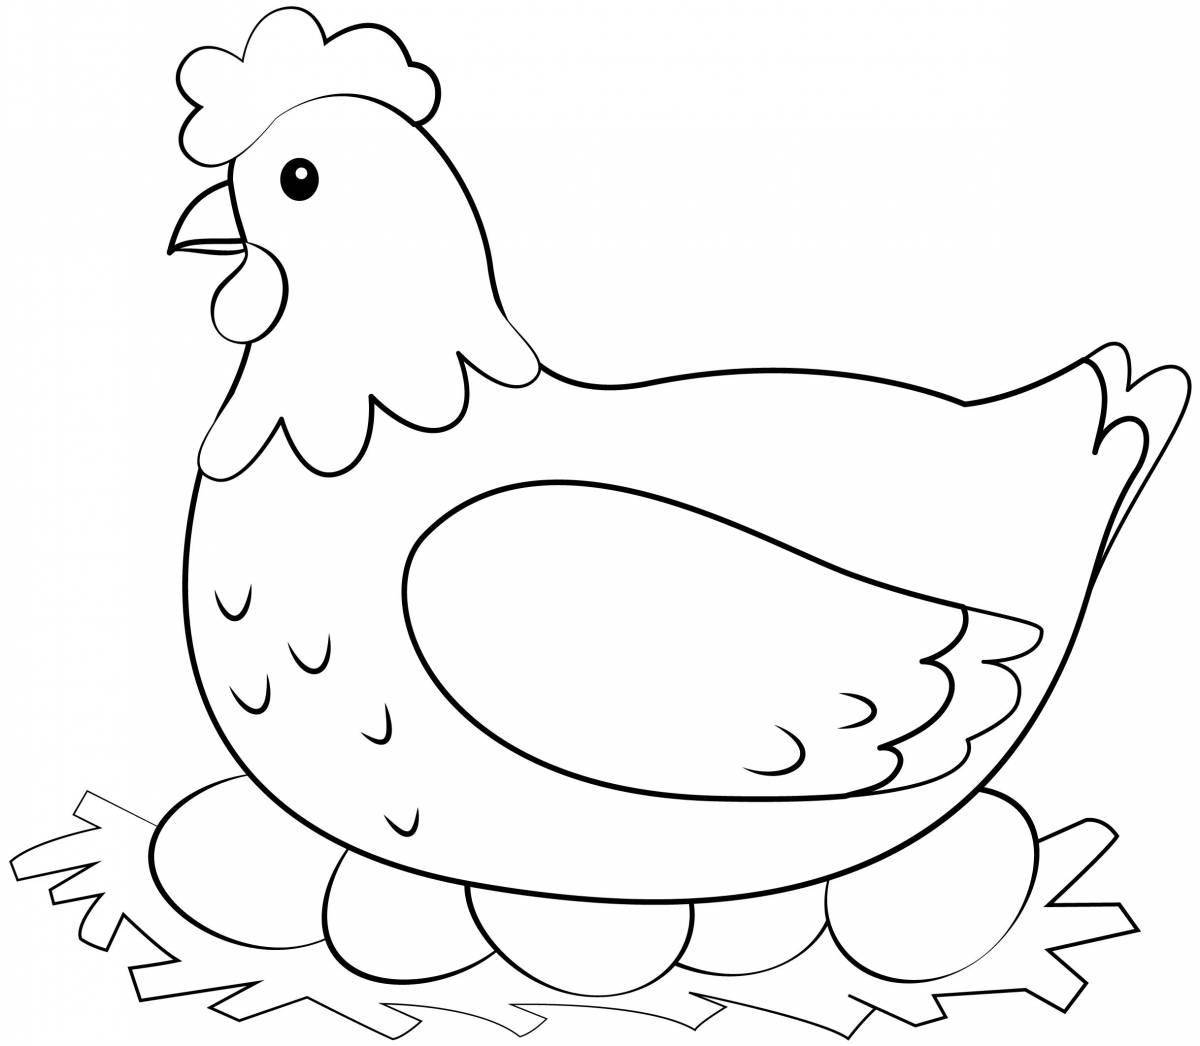 Веселая раскраска цыпленок для детей 2-3 лет